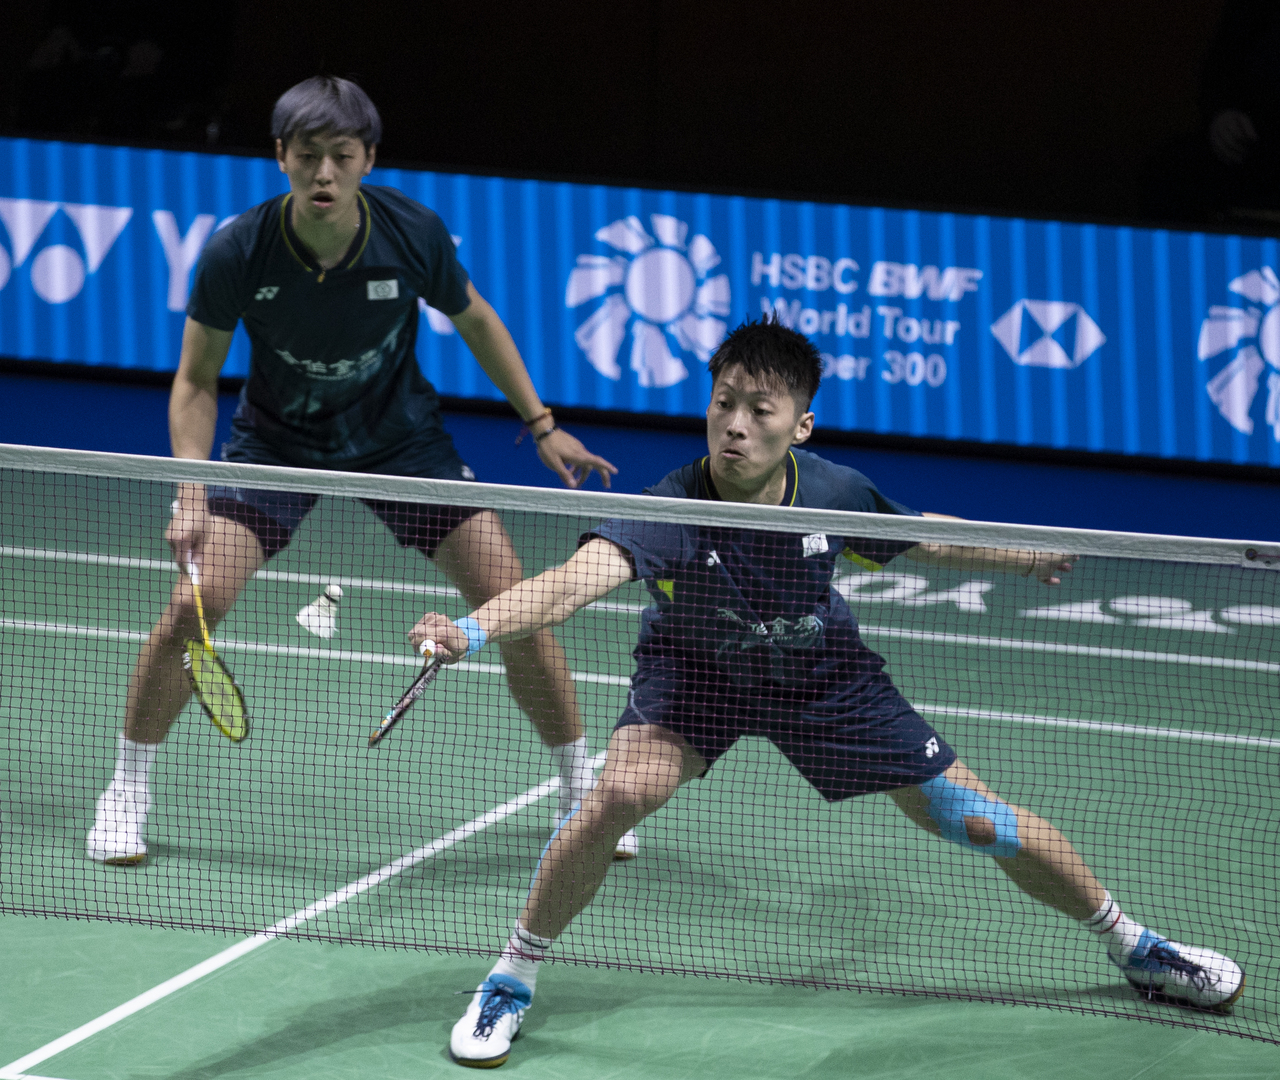 台湾羽球男双搭档李哲辉、杨博轩解释为何是「自费」参加全英羽赛。